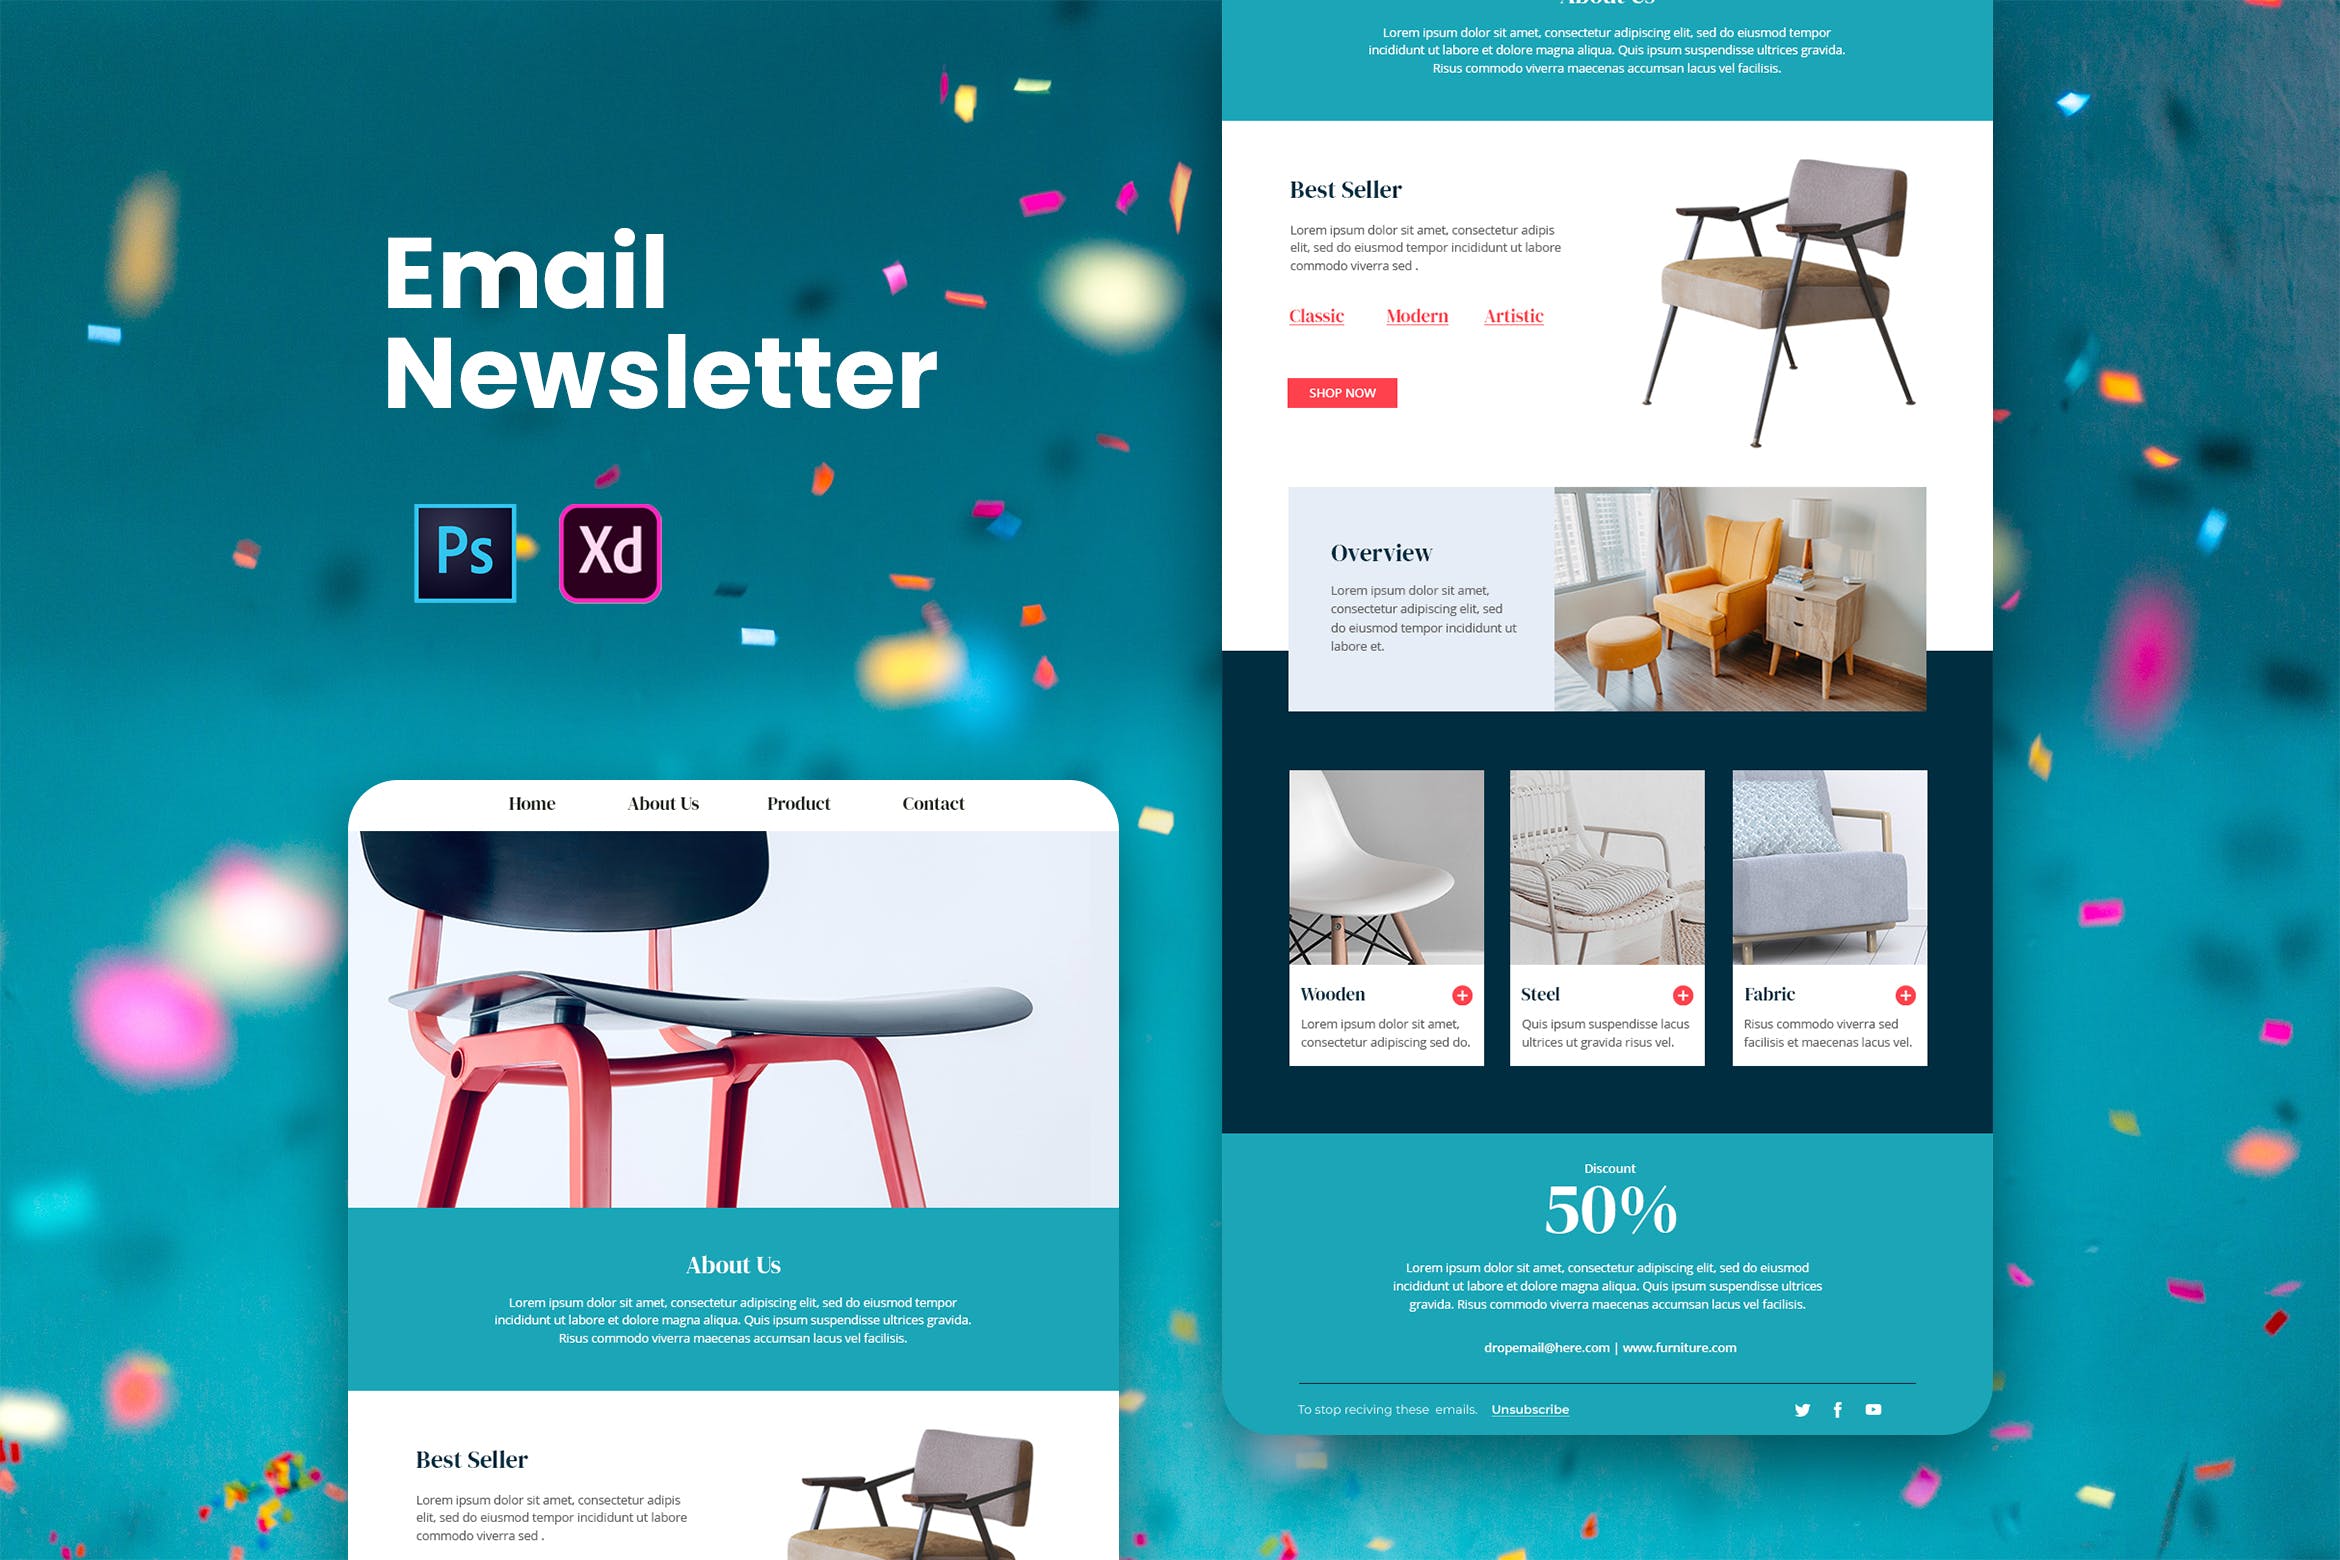 家具品牌推广EDM邮件模板非凡图库精选 Furniture Email Newsletter插图